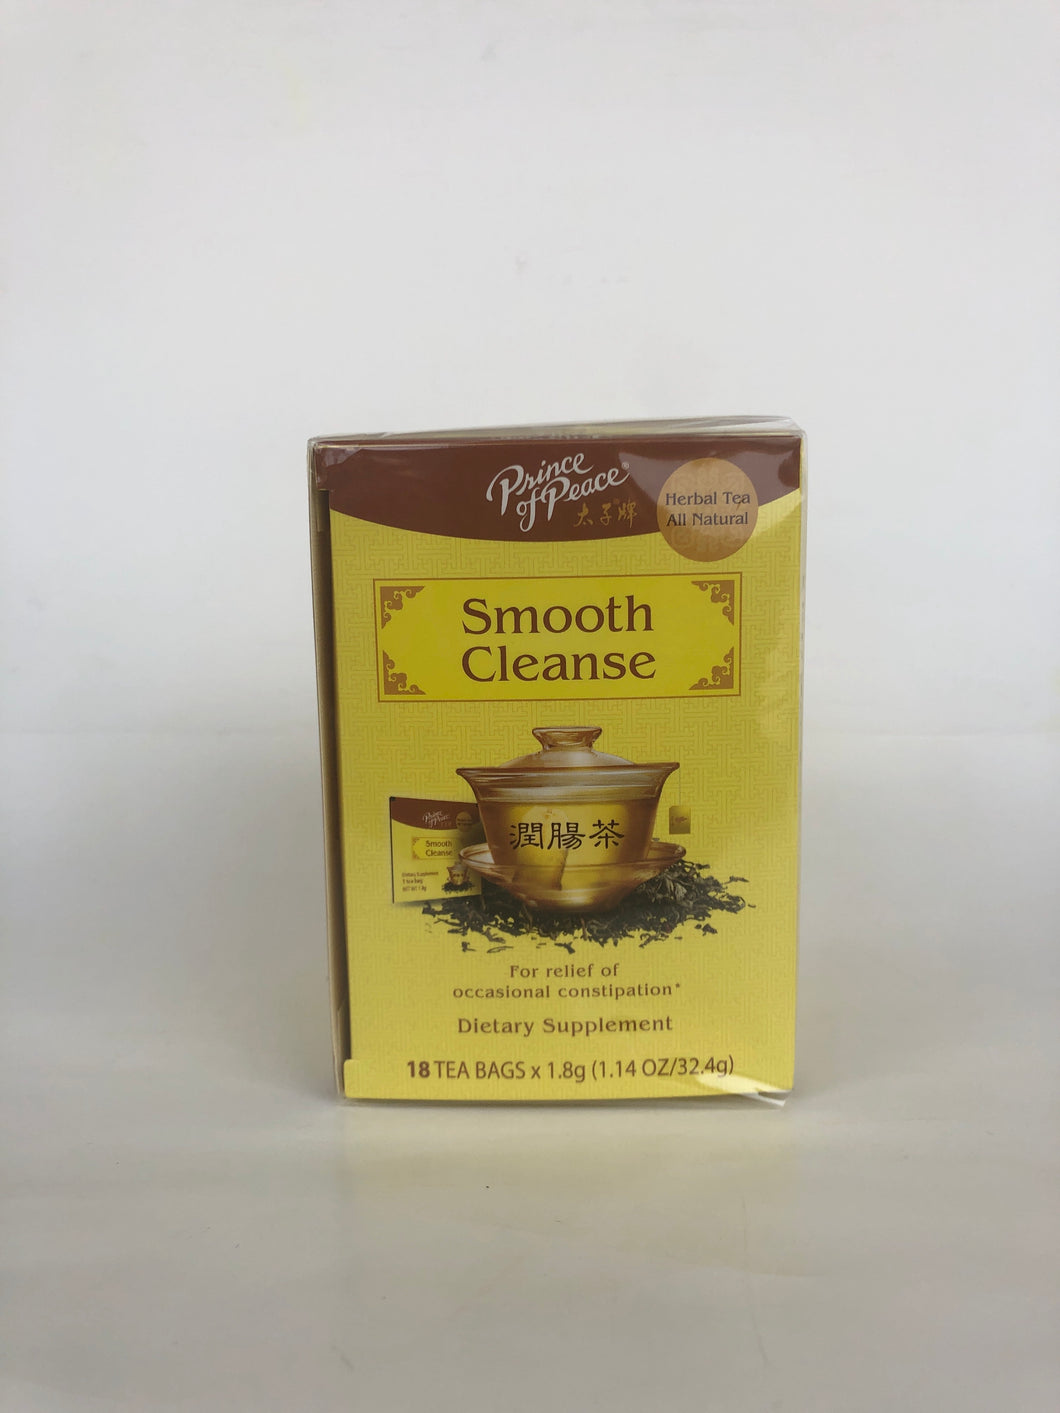 Smooth Cleanse Herbal Tea